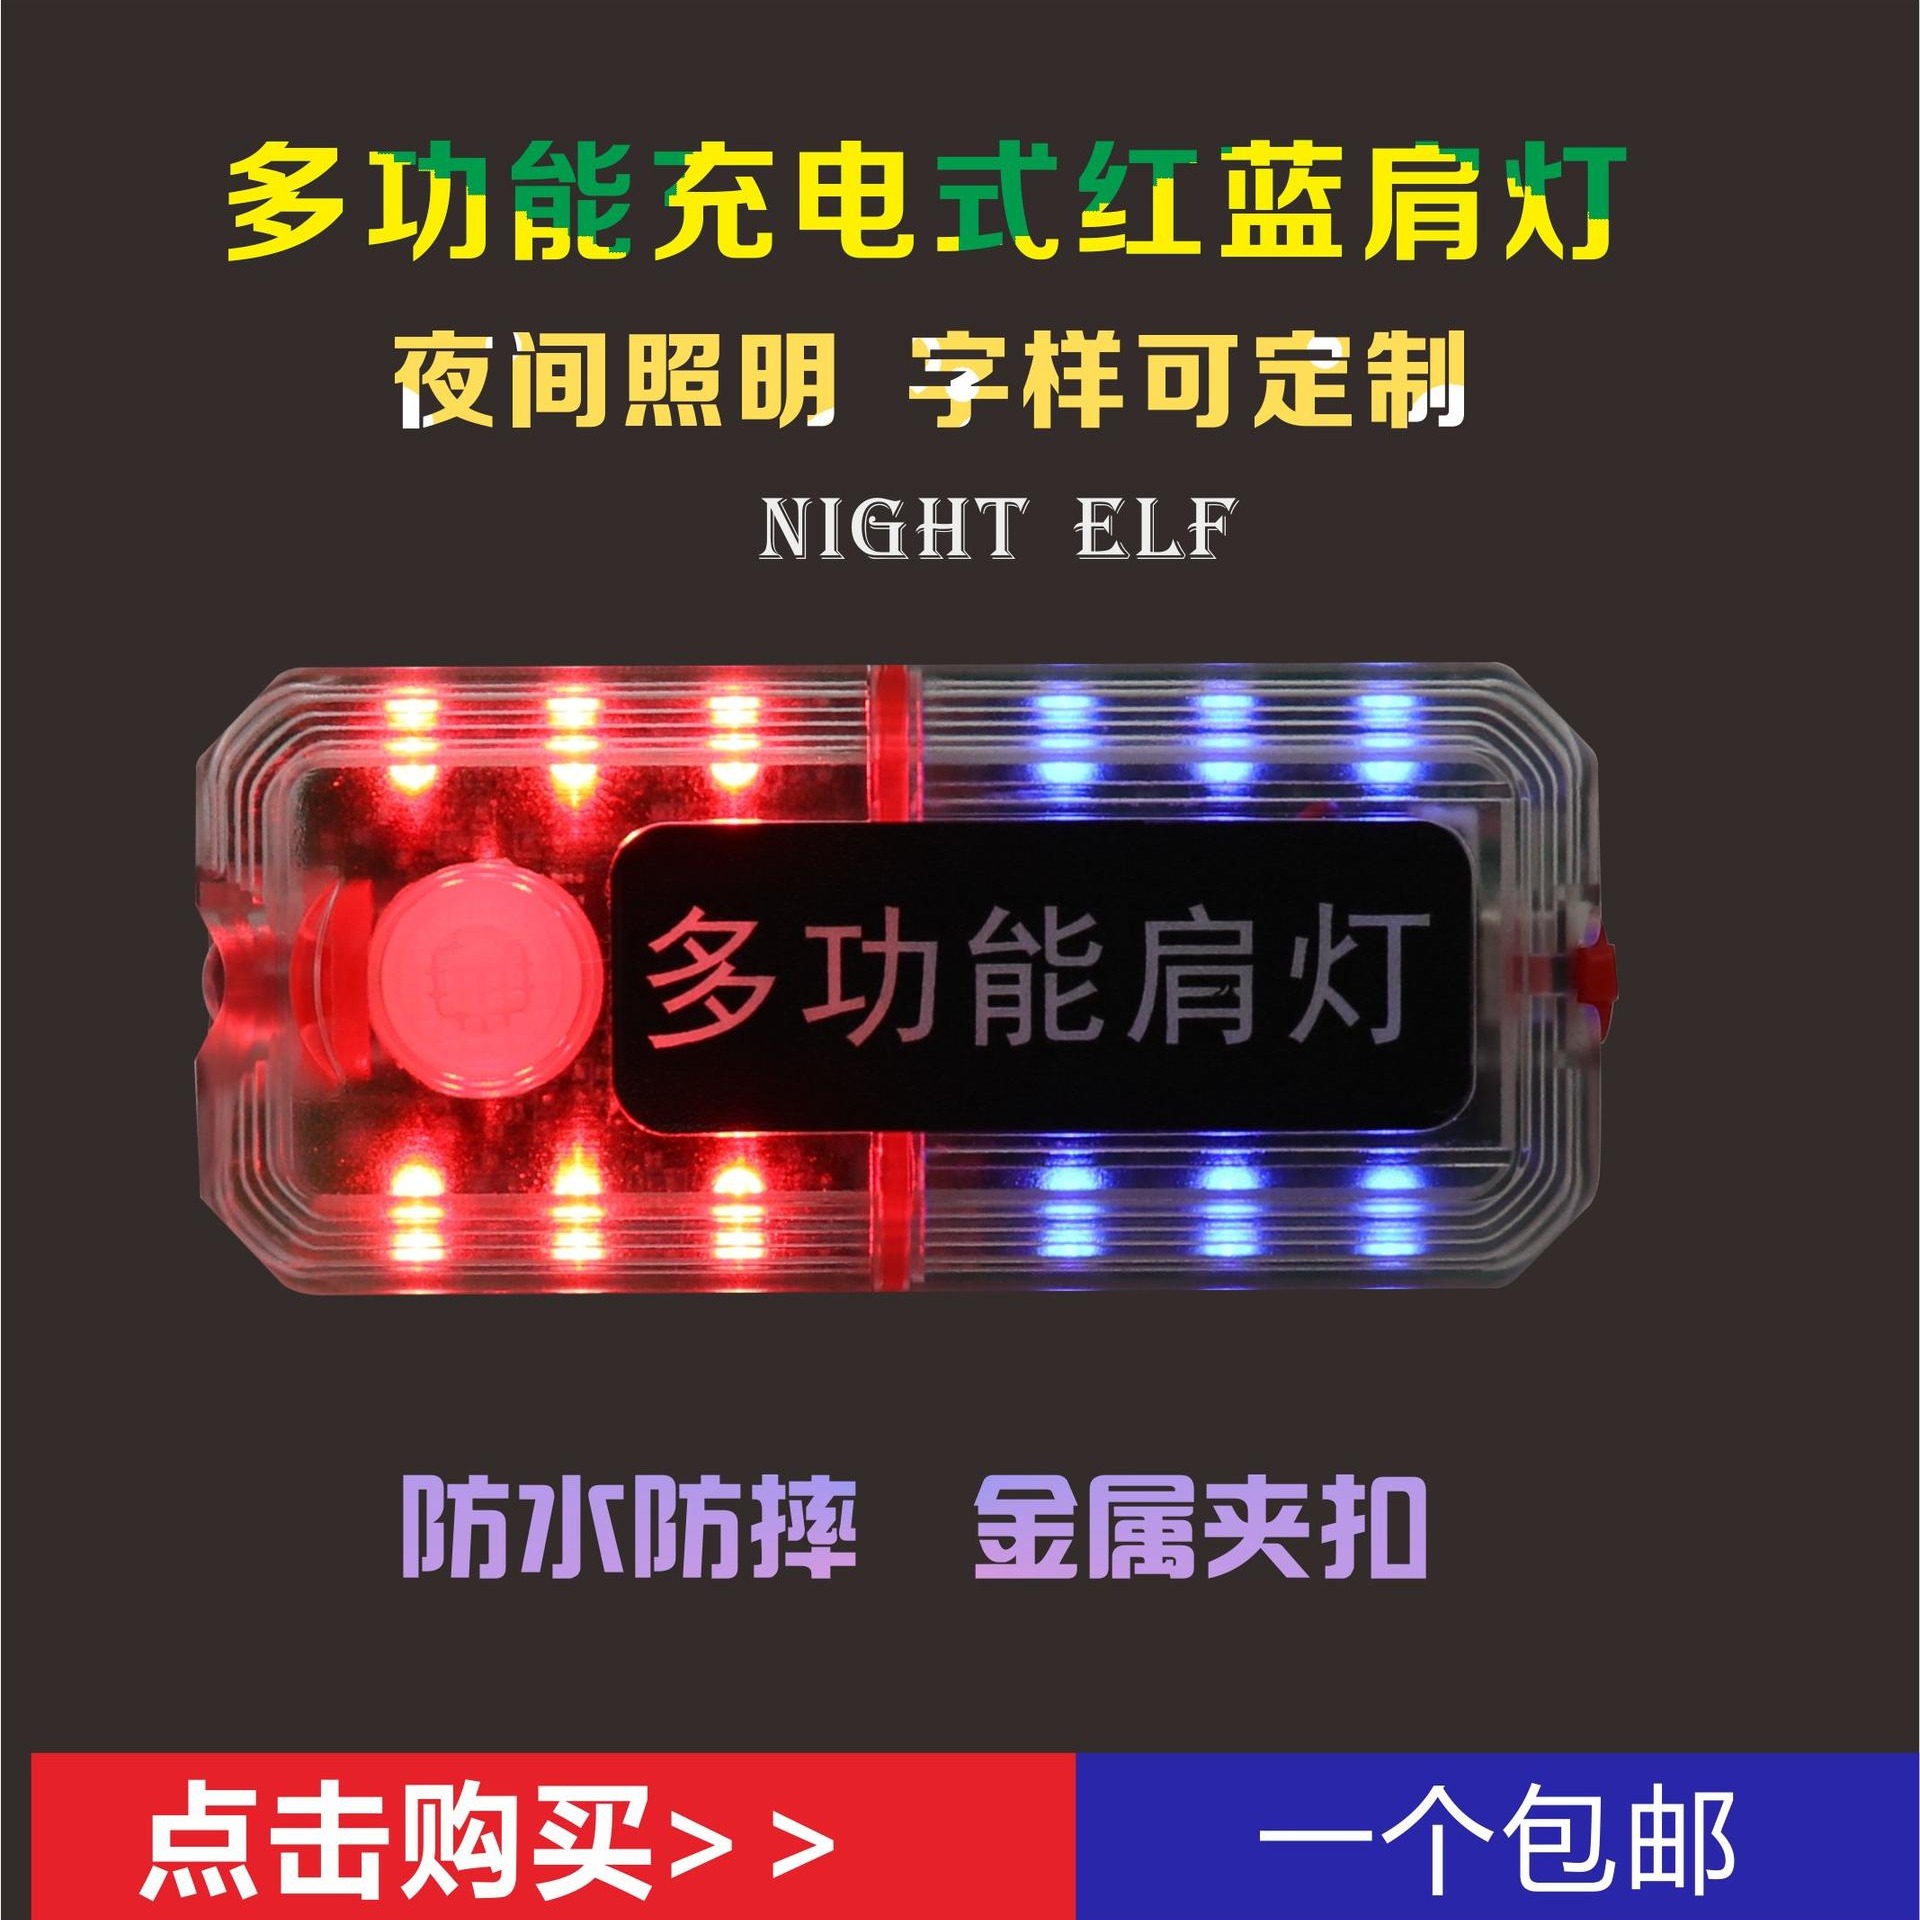 洲创电气CBY5010-LED红黄绿信号灯 铁路人员夹扣式防爆肩灯 救护工作人员磁力吸附信号指示灯 施工抢险方位指示灯图片